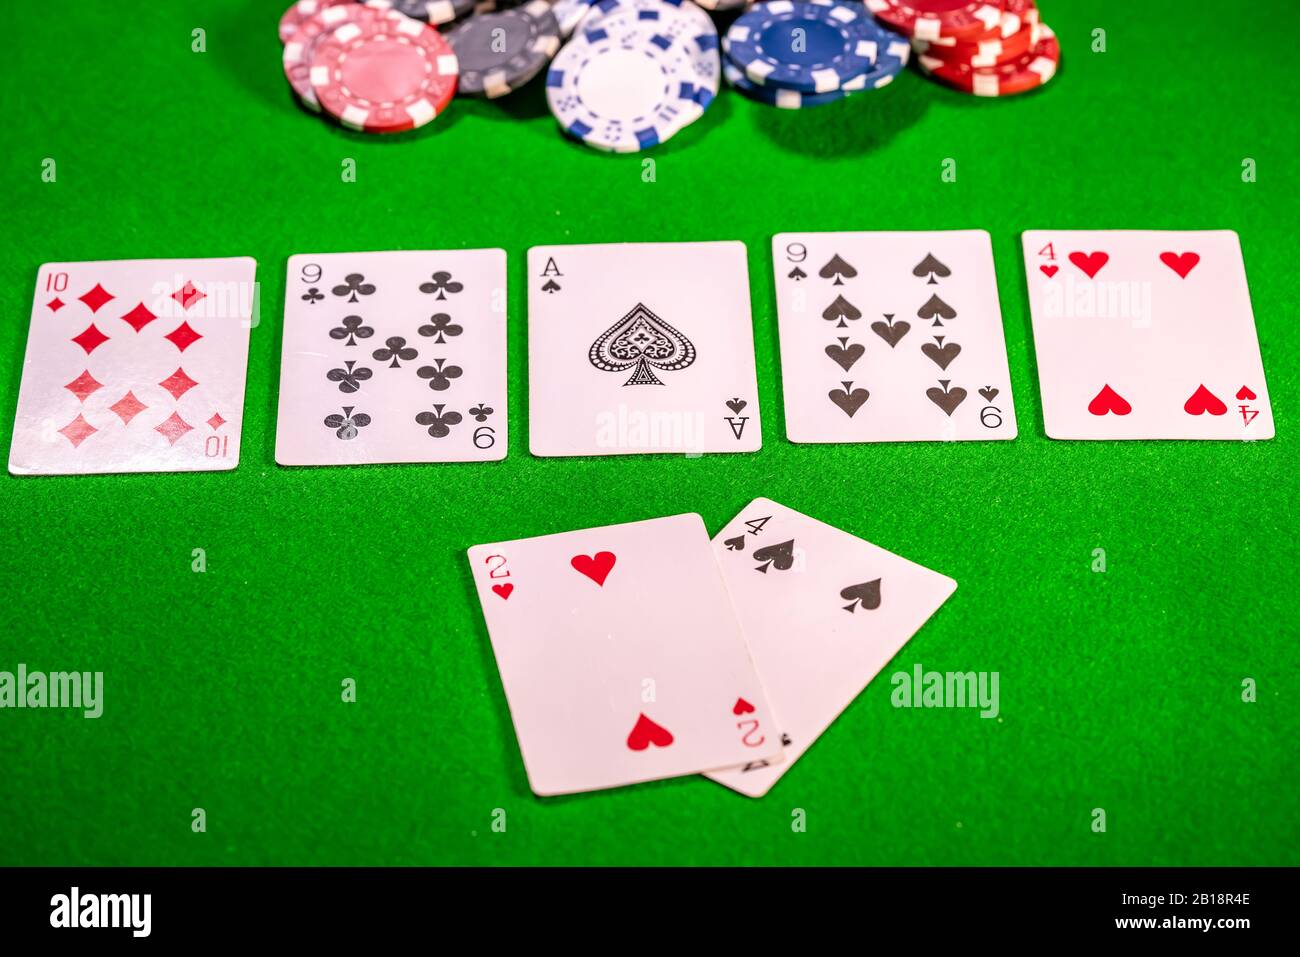 11 mano ganadora De dos pares en un juego de Texas Holdem Poker Foto de stock